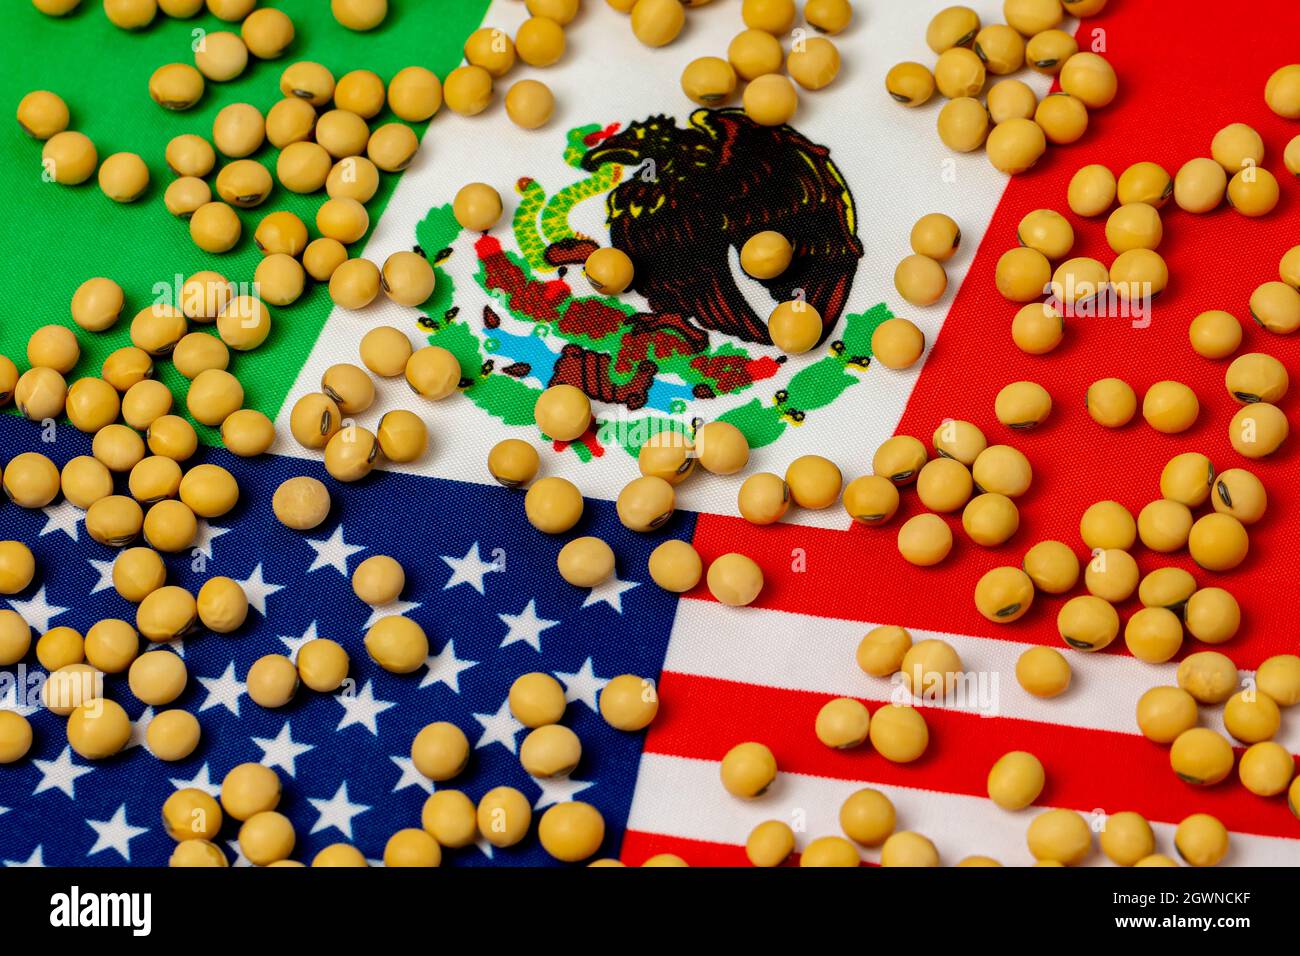 États-Unis d'Amérique, Mexique drapeaux et soja. Concept d'accord commercial sur l'agriculture, d'importations et d'exportations. Banque D'Images